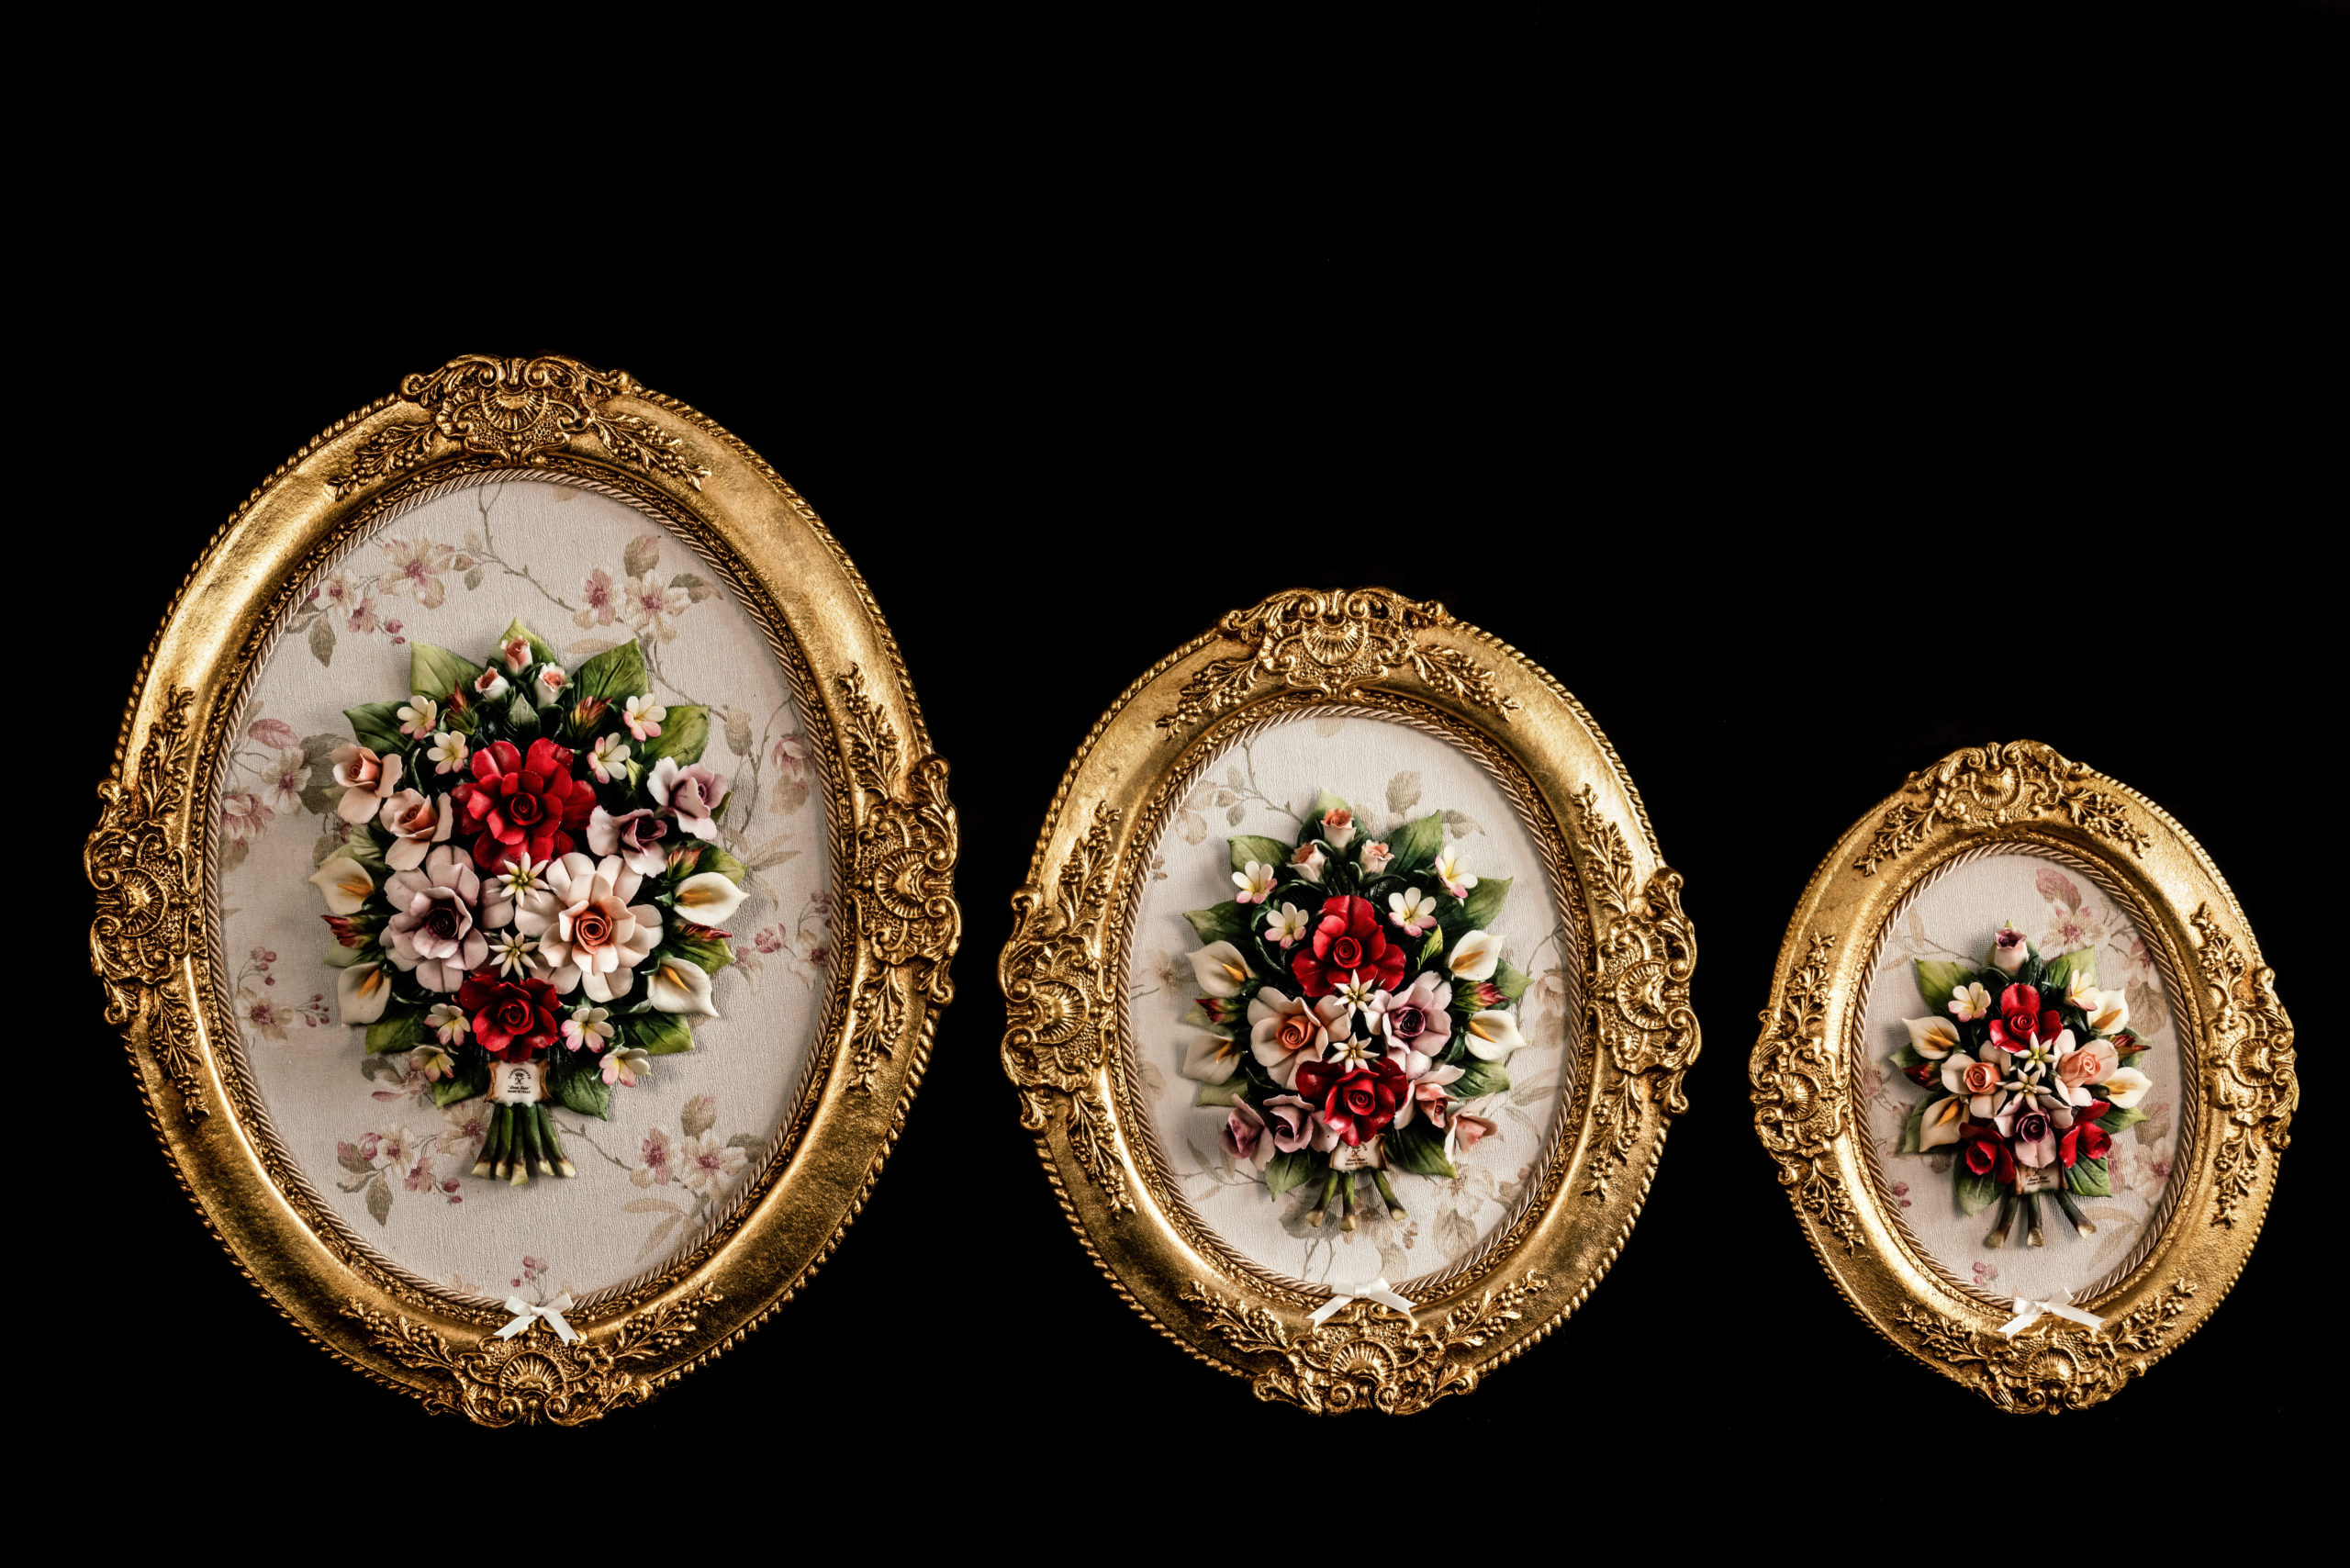 Cornice ovale in legno con fiore in porcellana realizzato a mano 10% made in Italy, quadro decorativo stile classico .